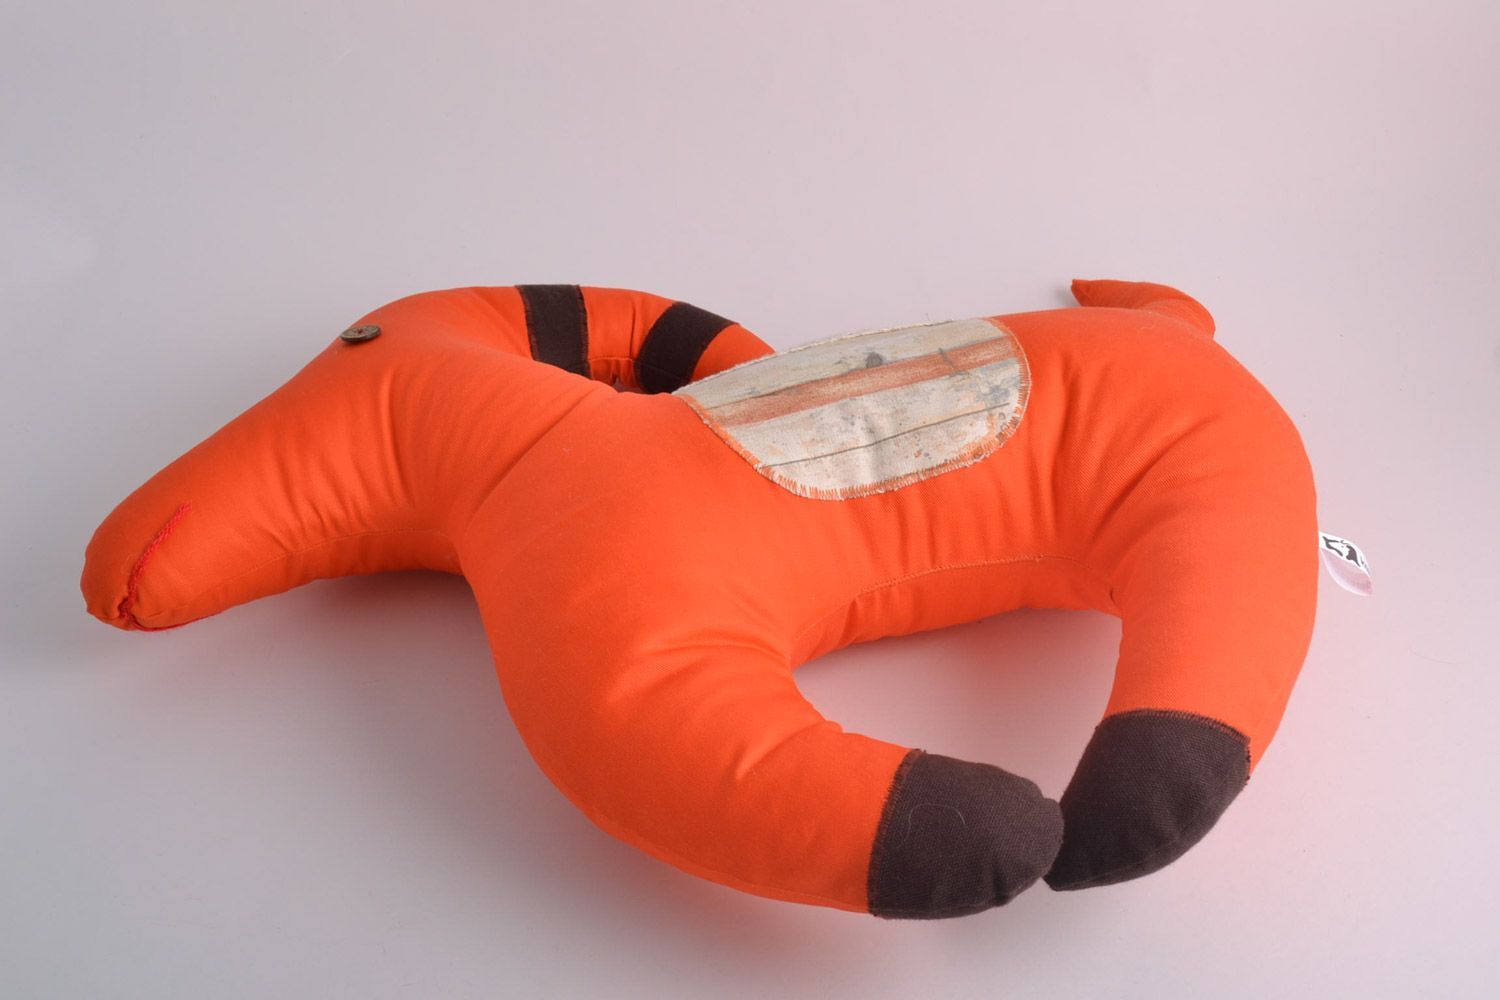 Almohada blanda juguete artesanal para niño anaranjada con forma de cabrita foto 2